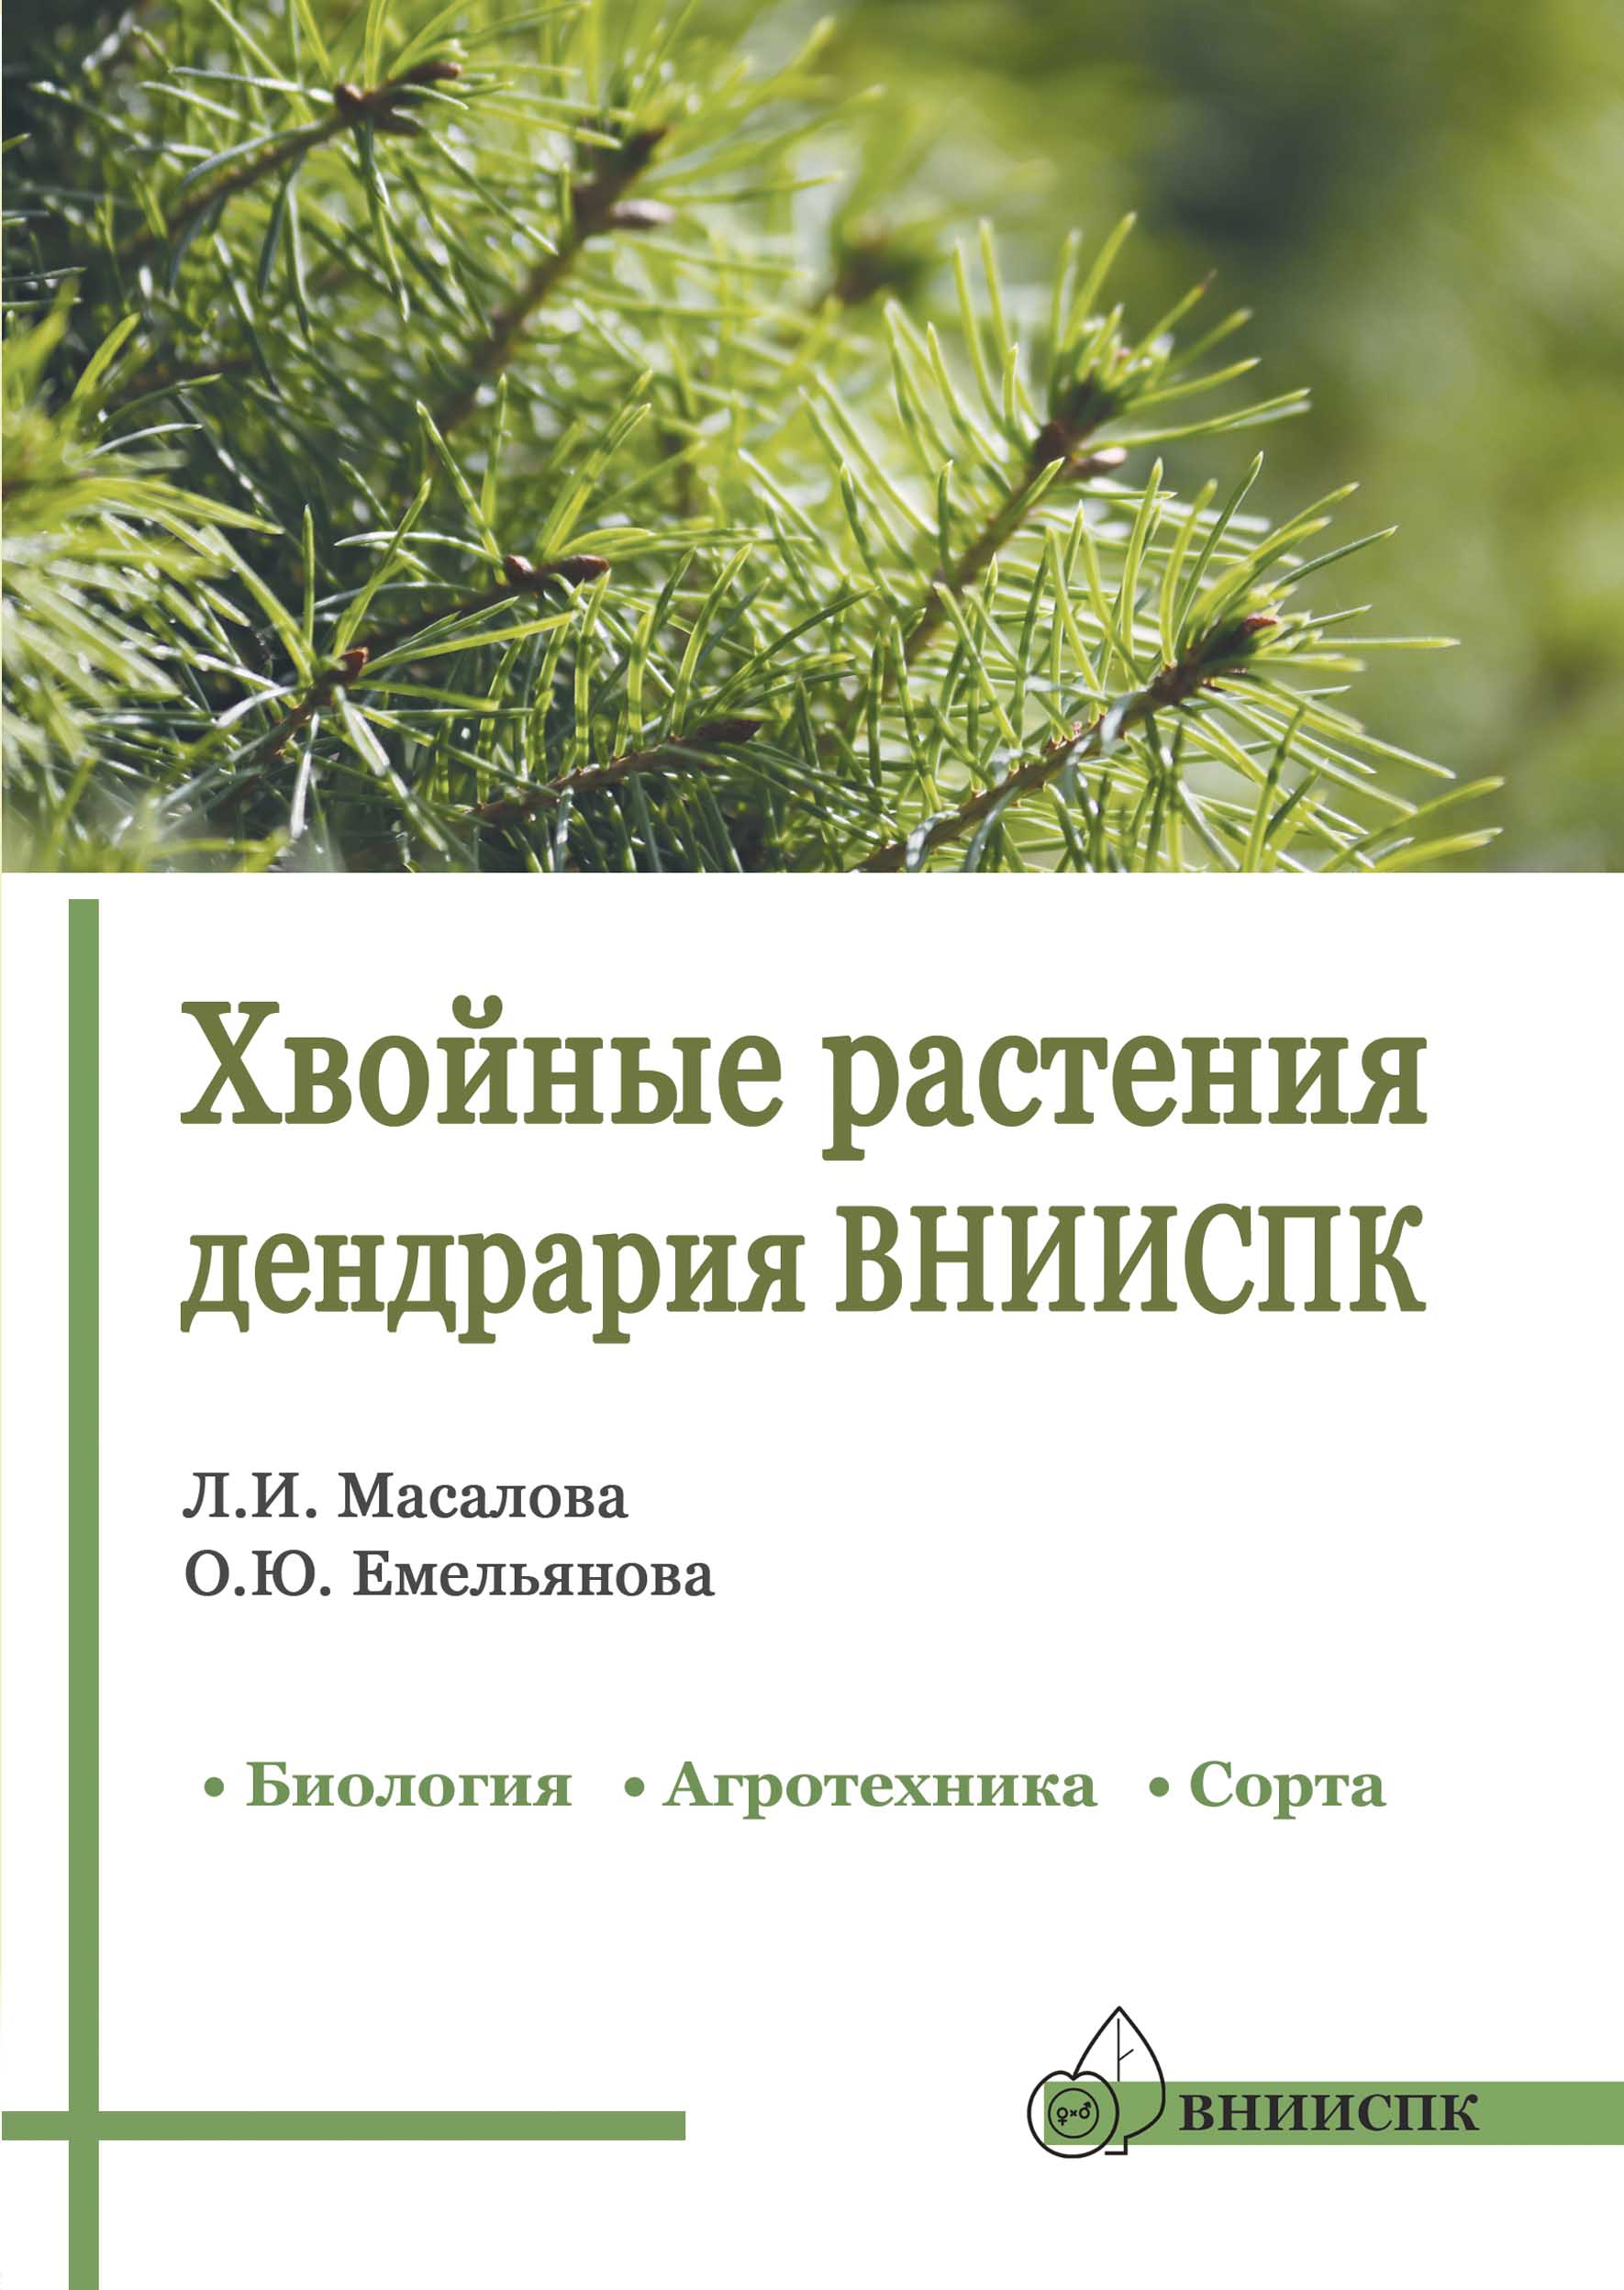 Хвойные растения дендрария ВНИИСПК (биология, агротехника, сорта): справочник, 2018